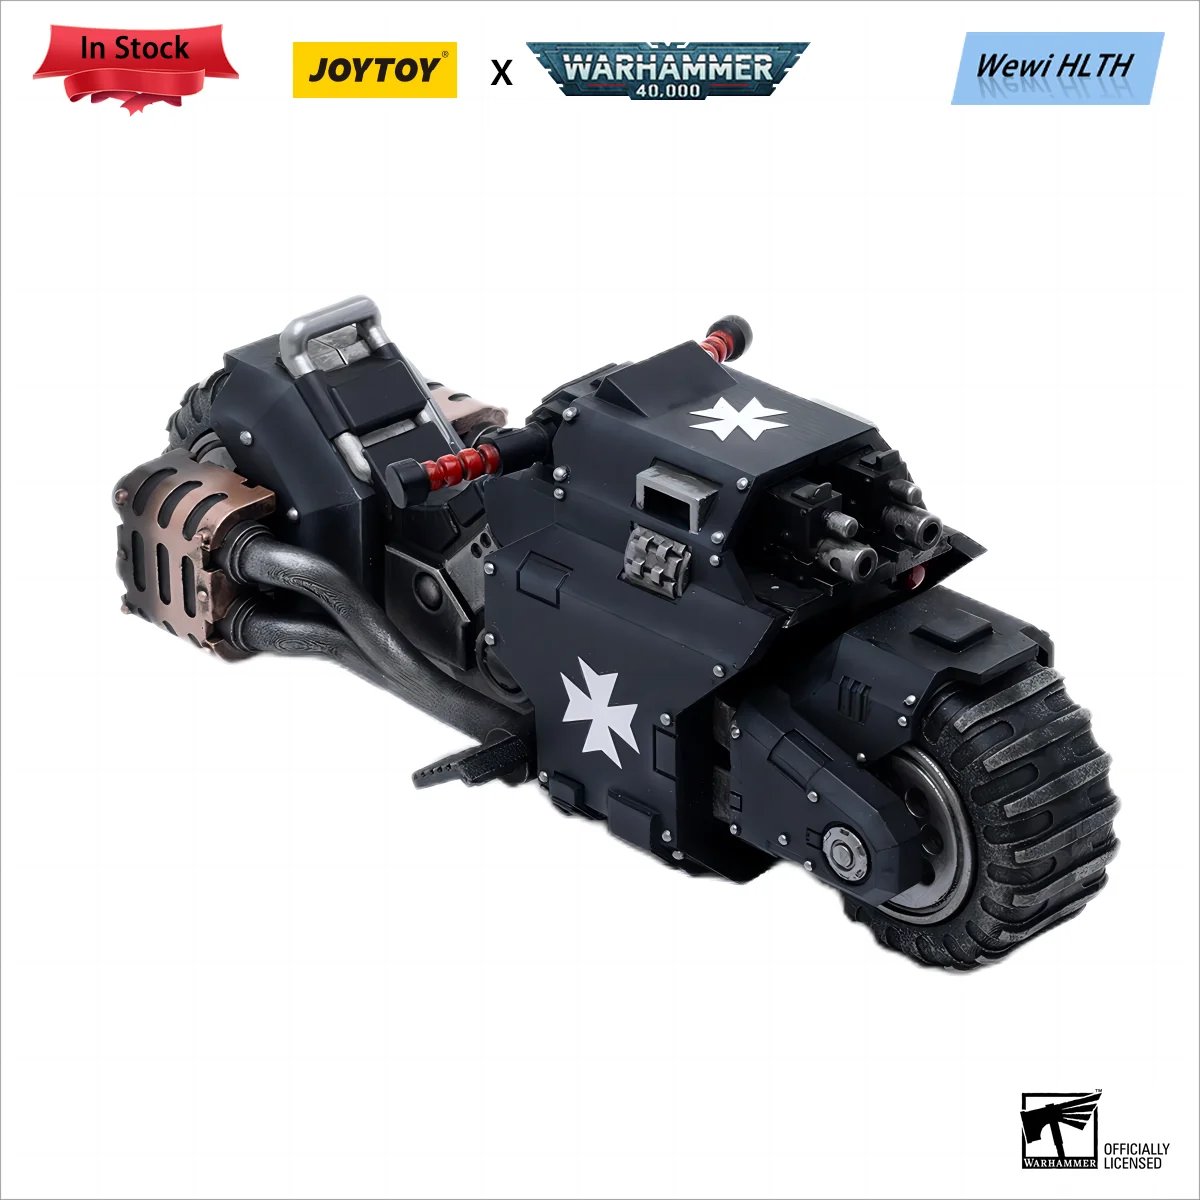 JOYTOY 1/18 Figura de acción Warhammer 40K Templarios Negros Outriders Colección de anime Modelo militar